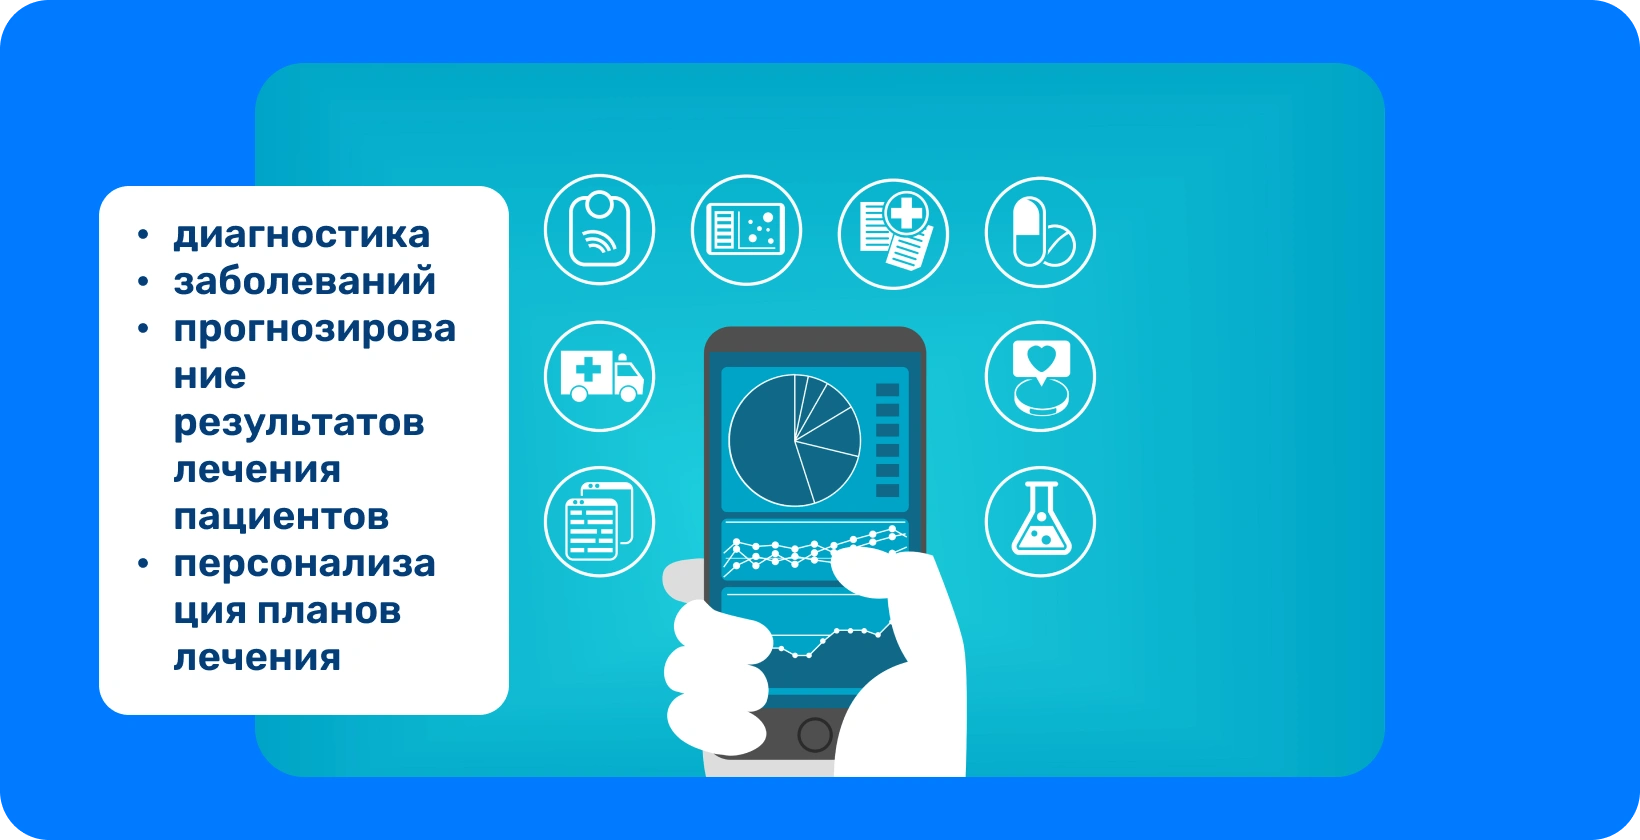 Рука, держащая смартфон с круговой диаграммой, окруженной значками, представляющими различные медицинские услуги.